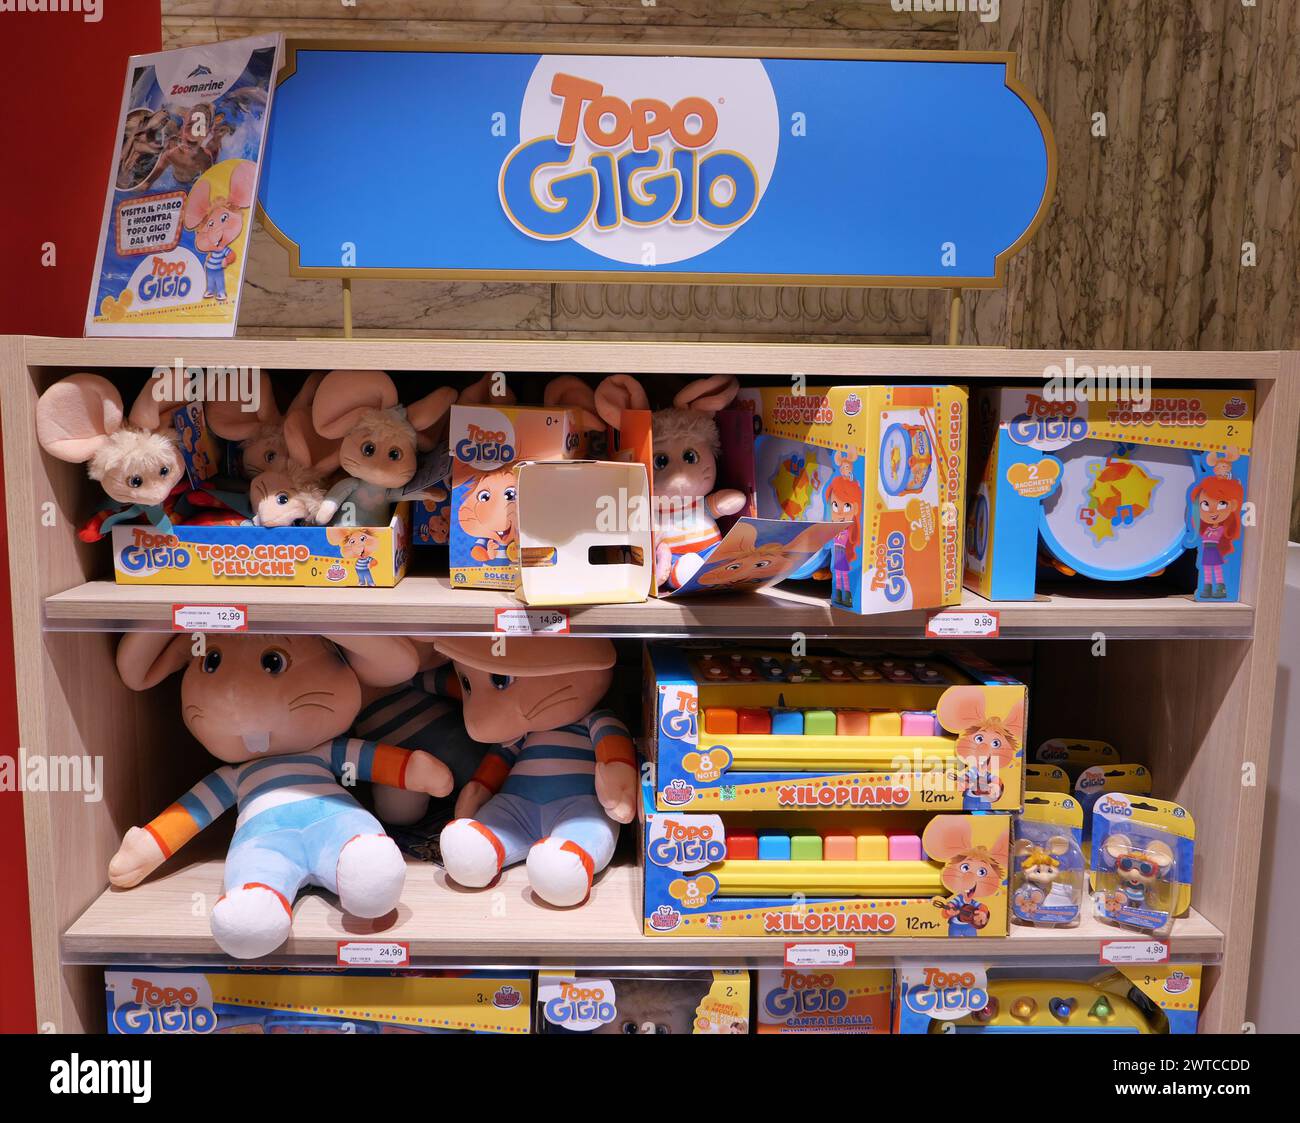 TOPO GIGIO GAME BOXES ON DISPLAY INSIDE THE HAMLEYS TOY STORE Stock Photo